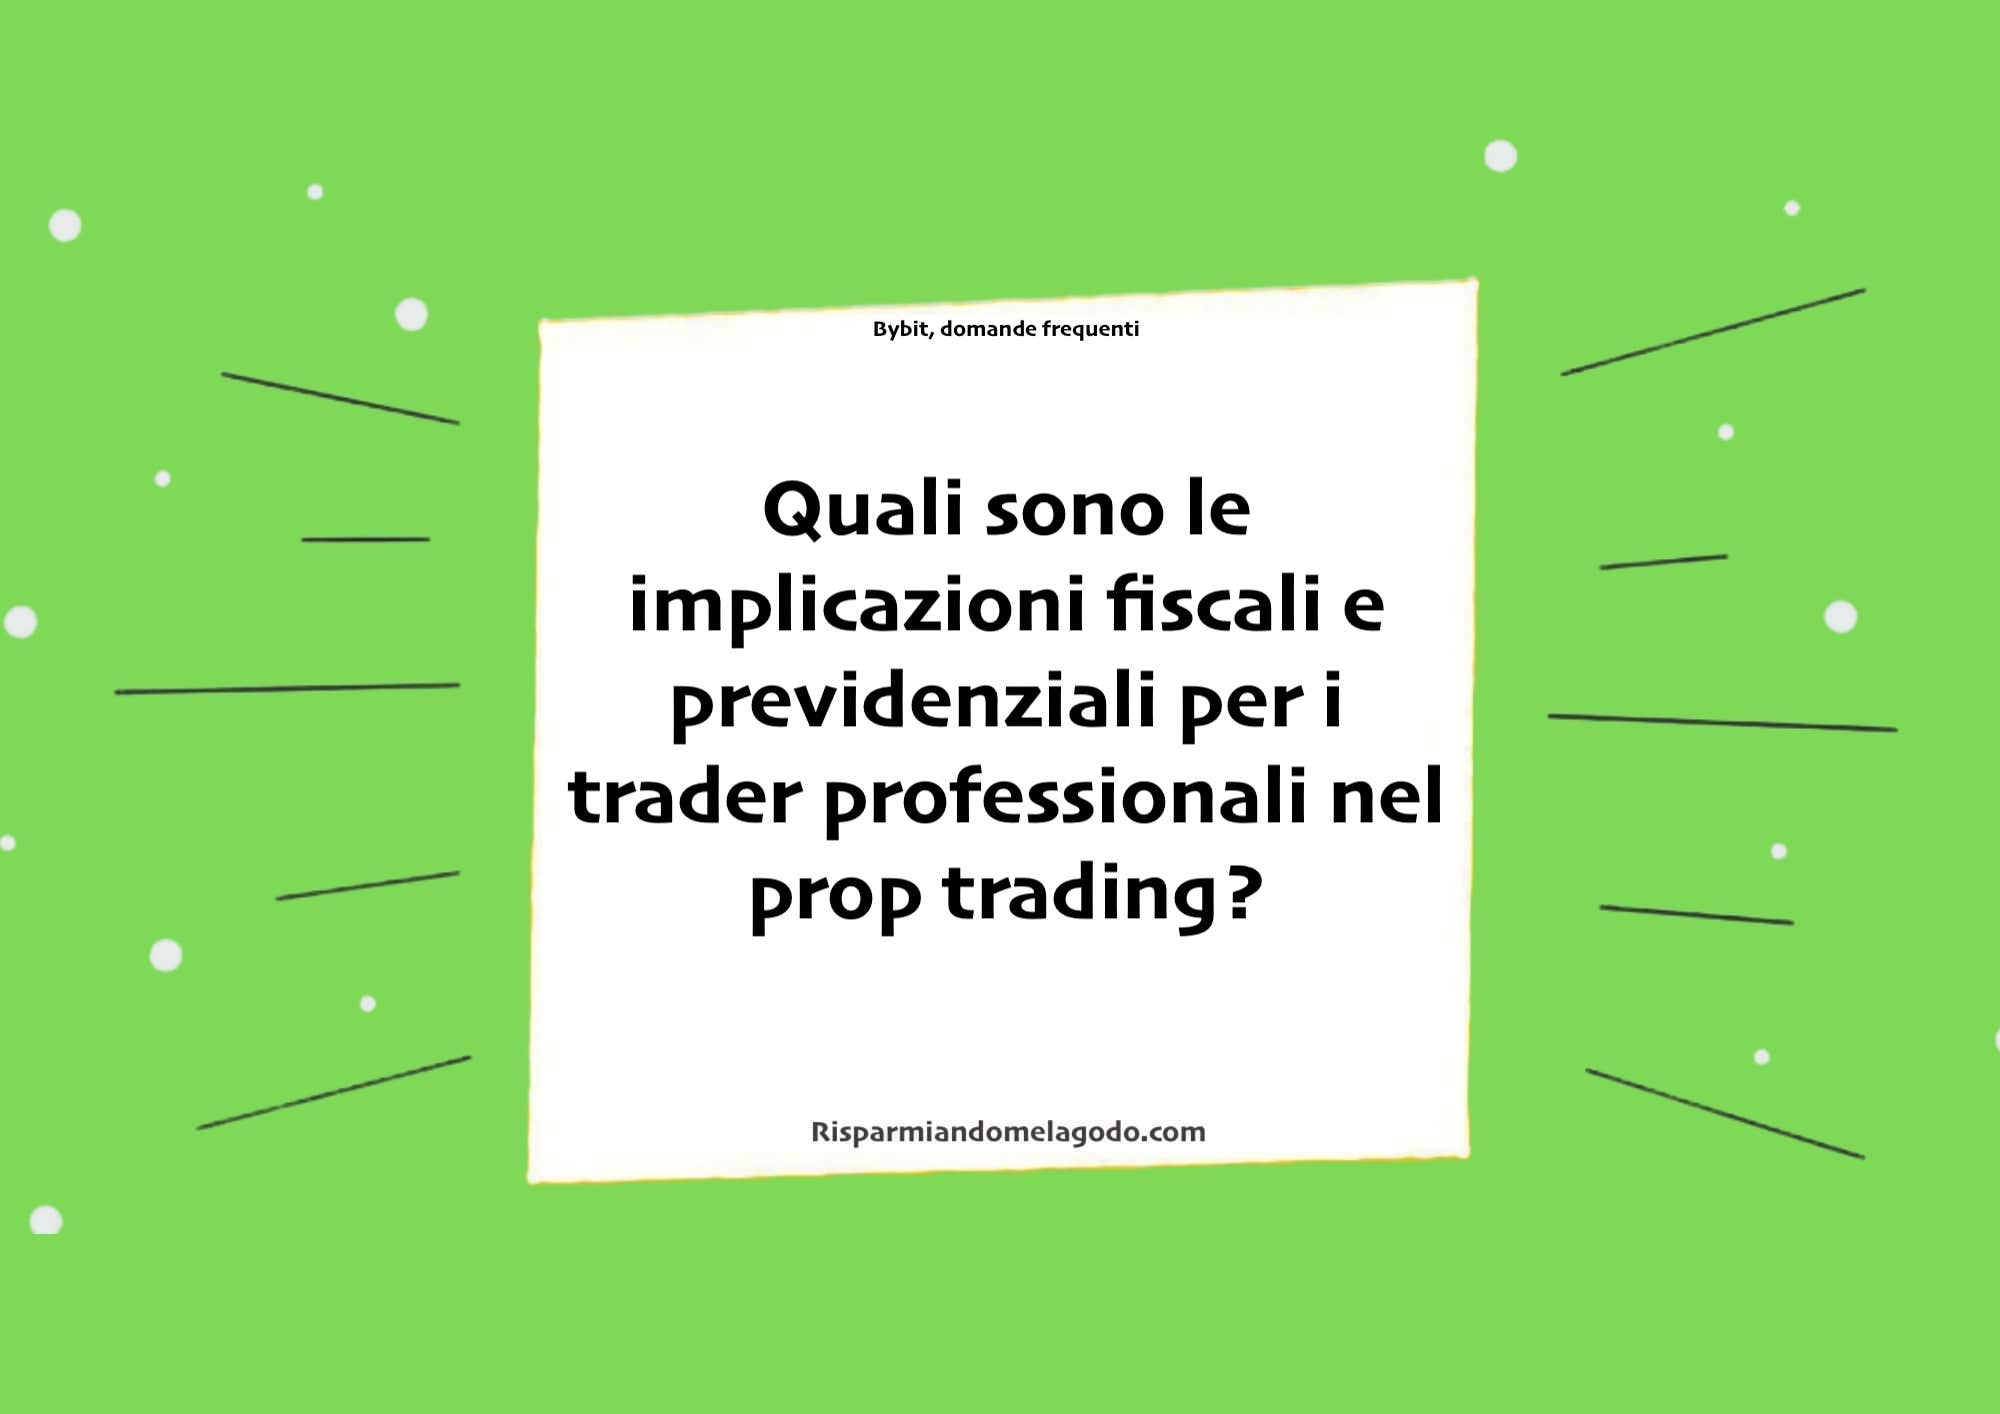 Quali sono le implicazioni fiscali e previdenziali per i trader professionali nel prop trading?